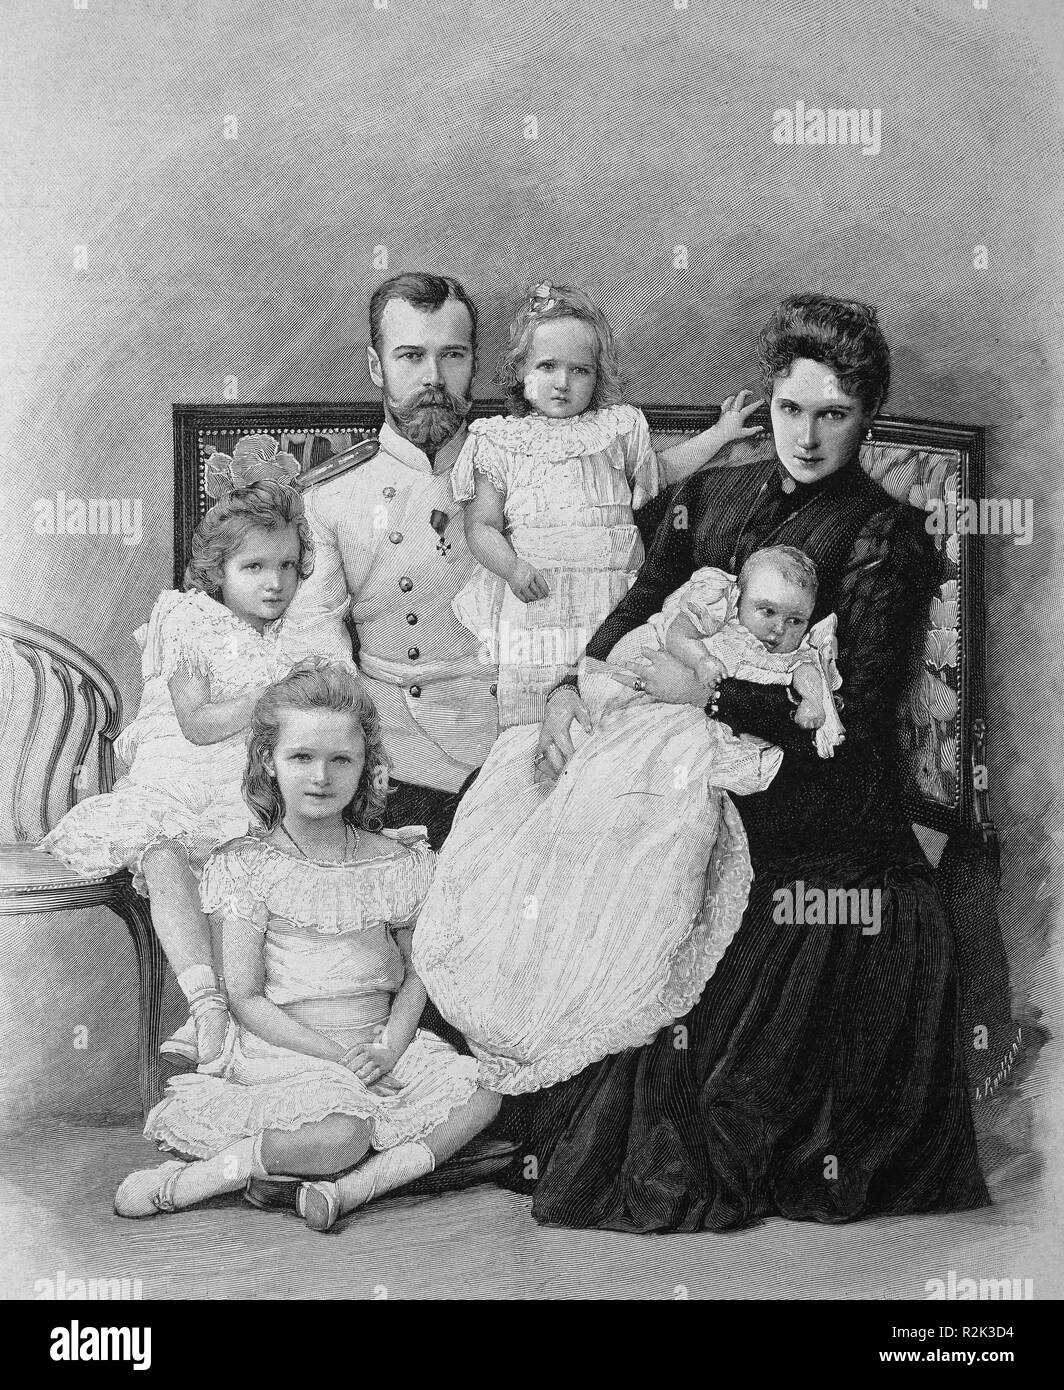 Nicolás II de Rusia y su familia. Grabado según foto de Levitsky. 16 de agosto de 1901. Author: World History / Russia. Stock Photo